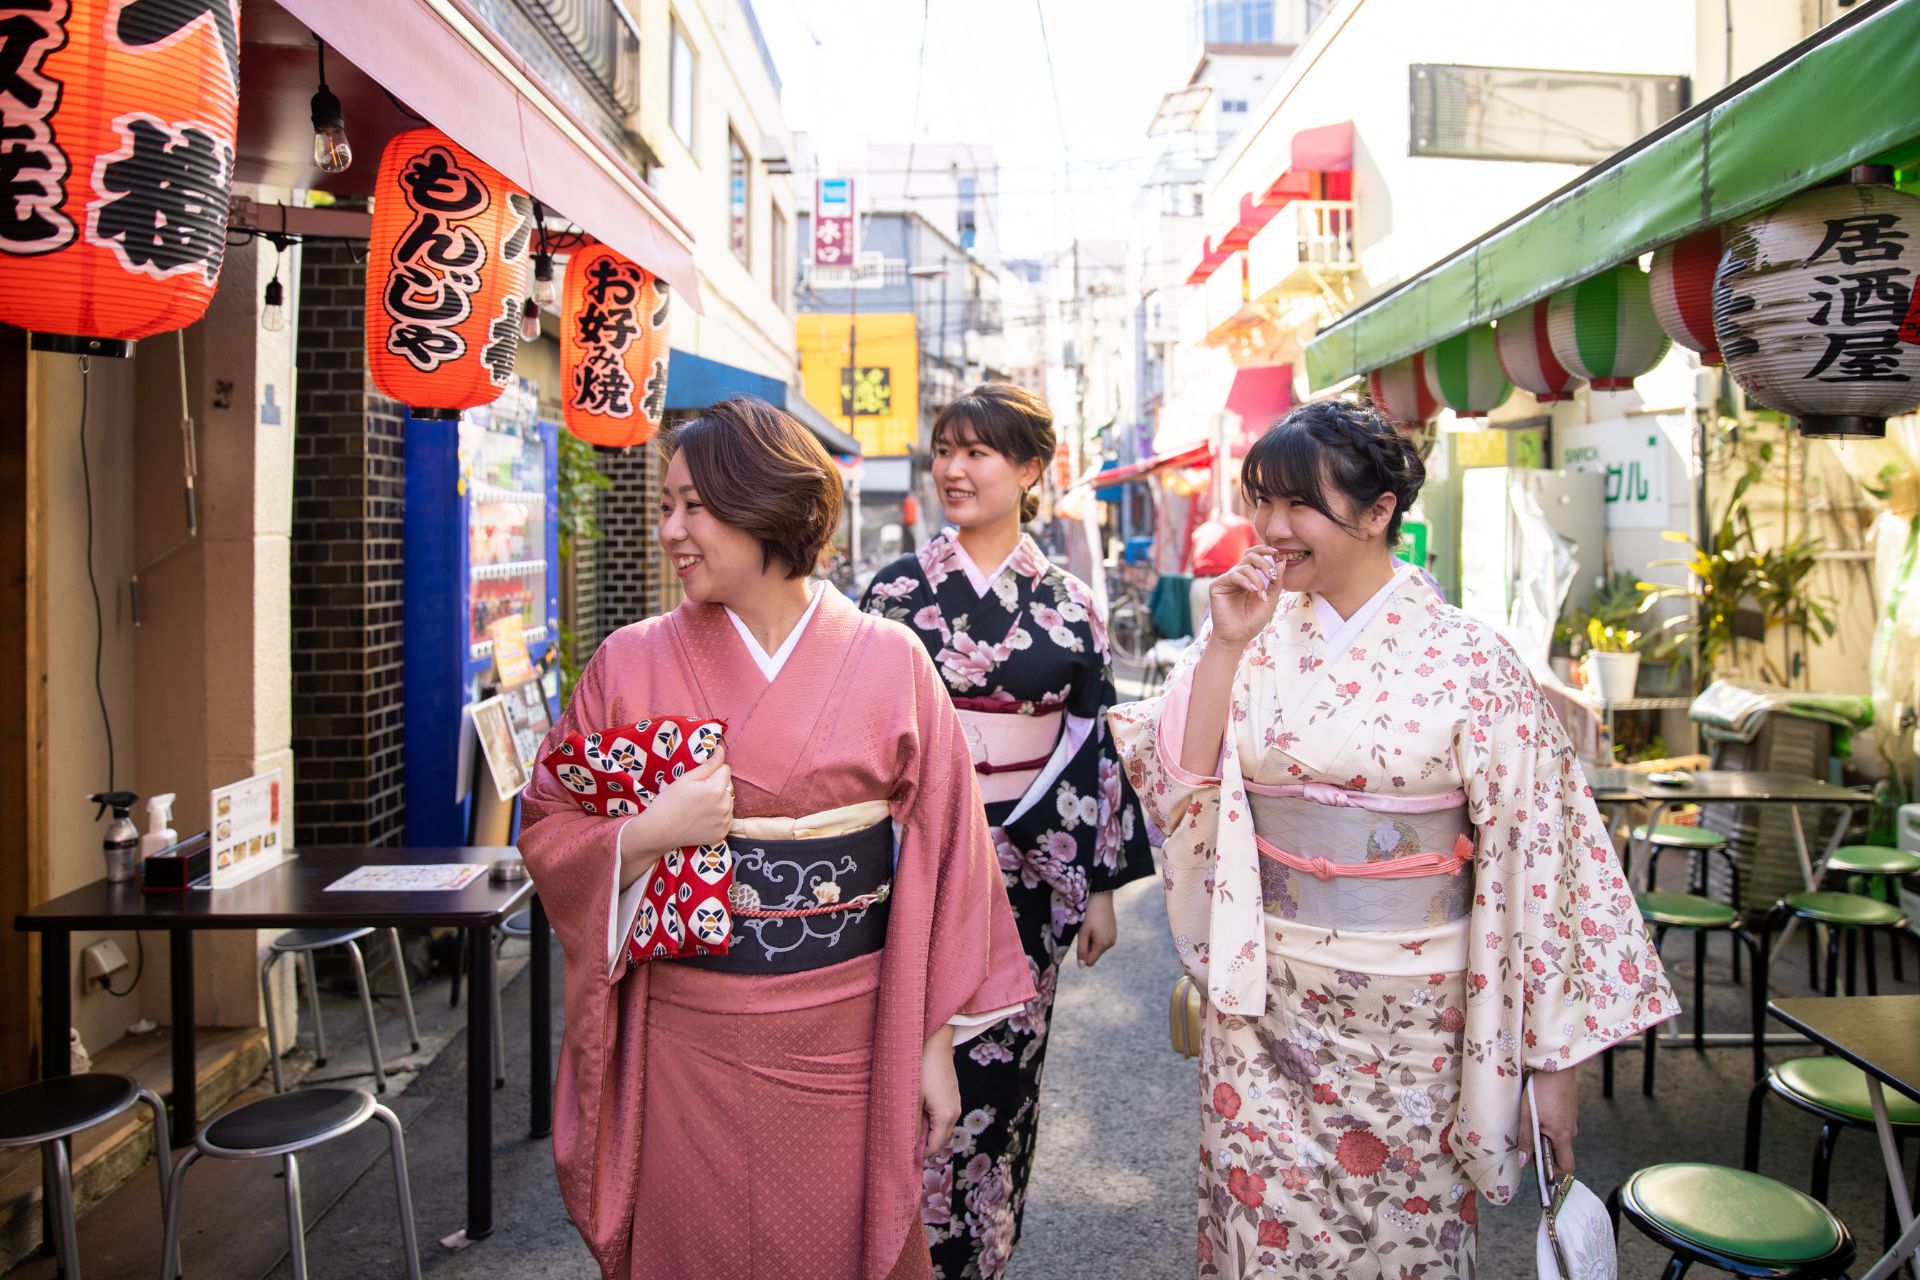 Japanese women in kimono walking in food markets in Kyoto